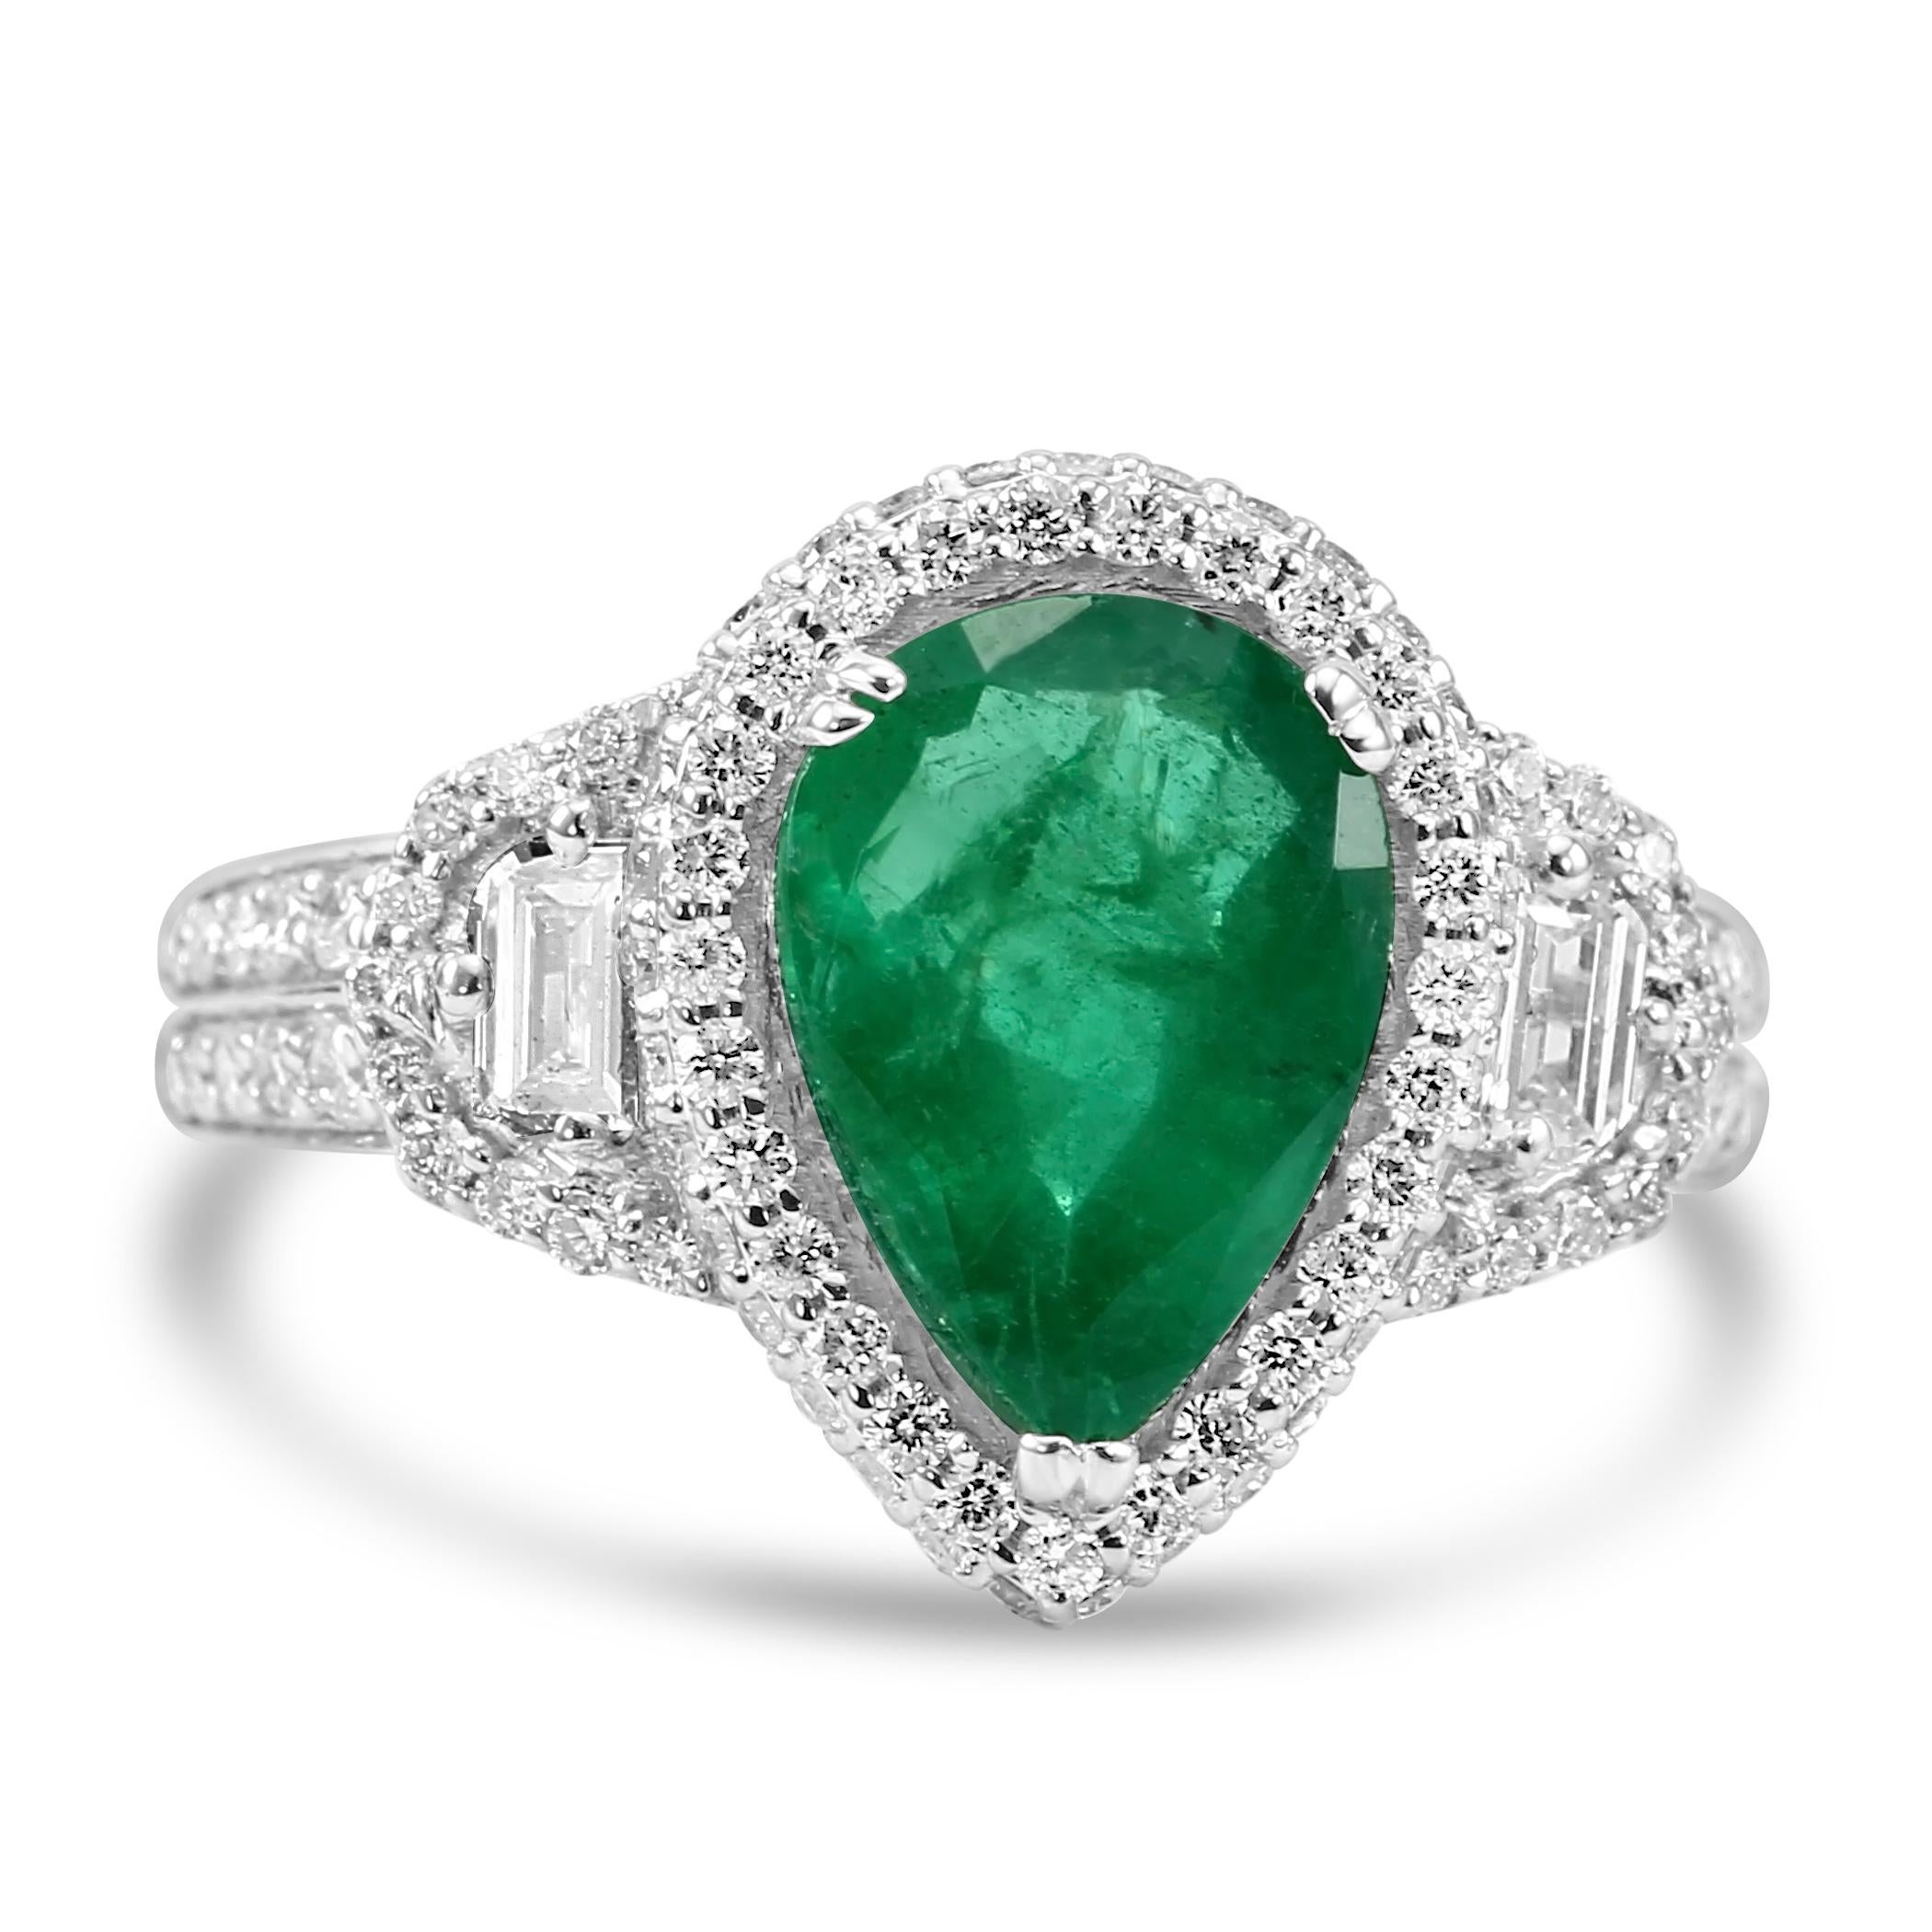 Unser Ring mit birnenförmigem Smaragd ist der Inbegriff zeitloser Eleganz. In der Mitte befindet sich ein atemberaubender birnenförmiger Smaragd mit einem Gewicht von beeindruckenden 2,38 Karat. Dieser bezaubernde Edelstein wird von zwei